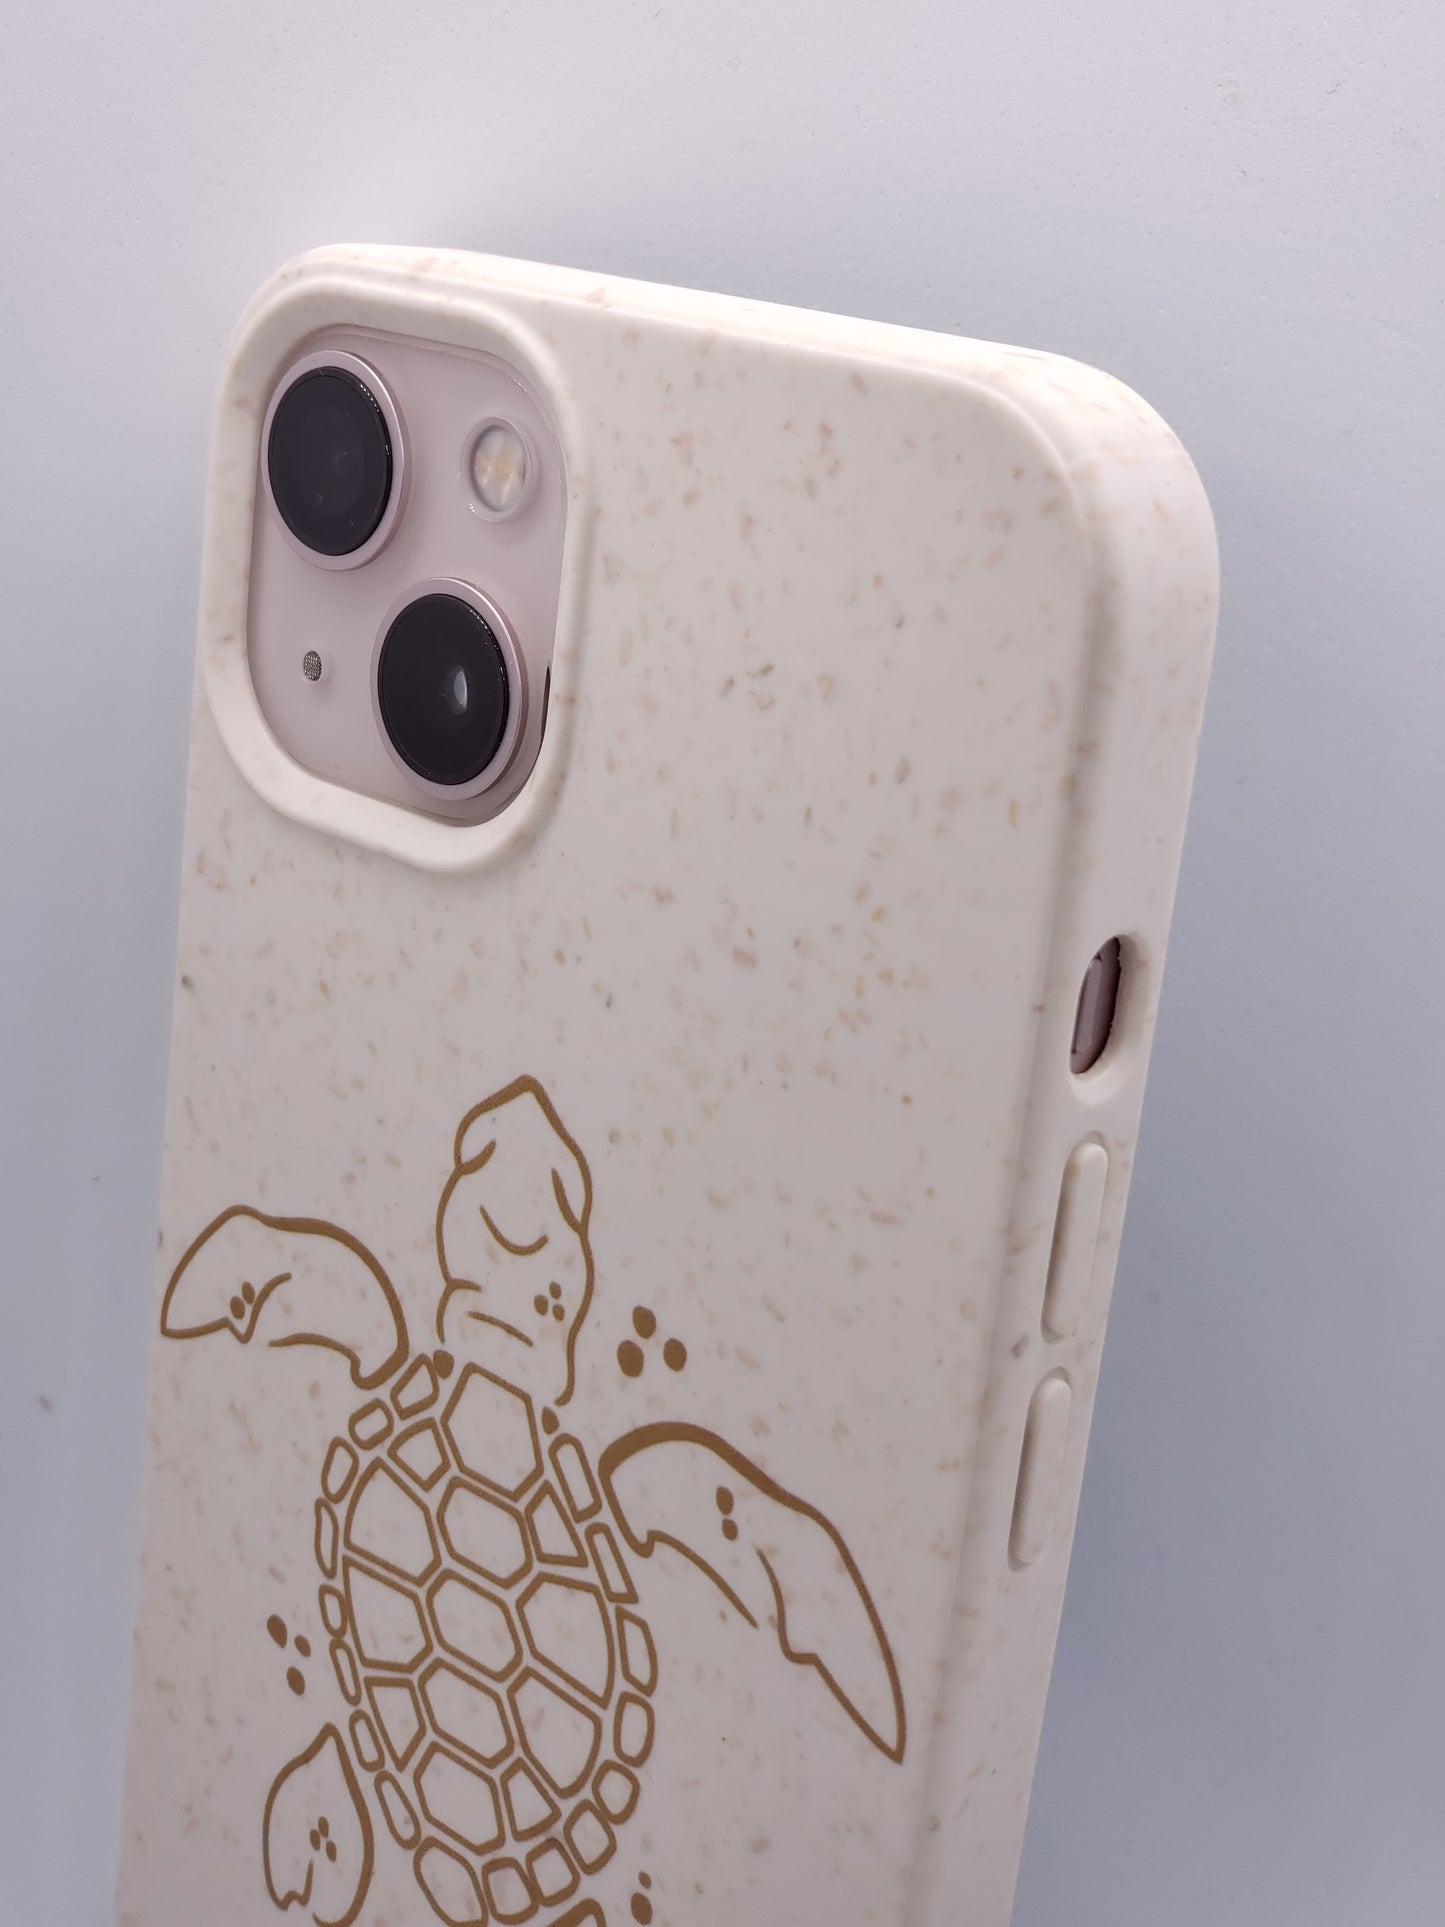 Coque iPhone compostable biodégradable tortue océanique